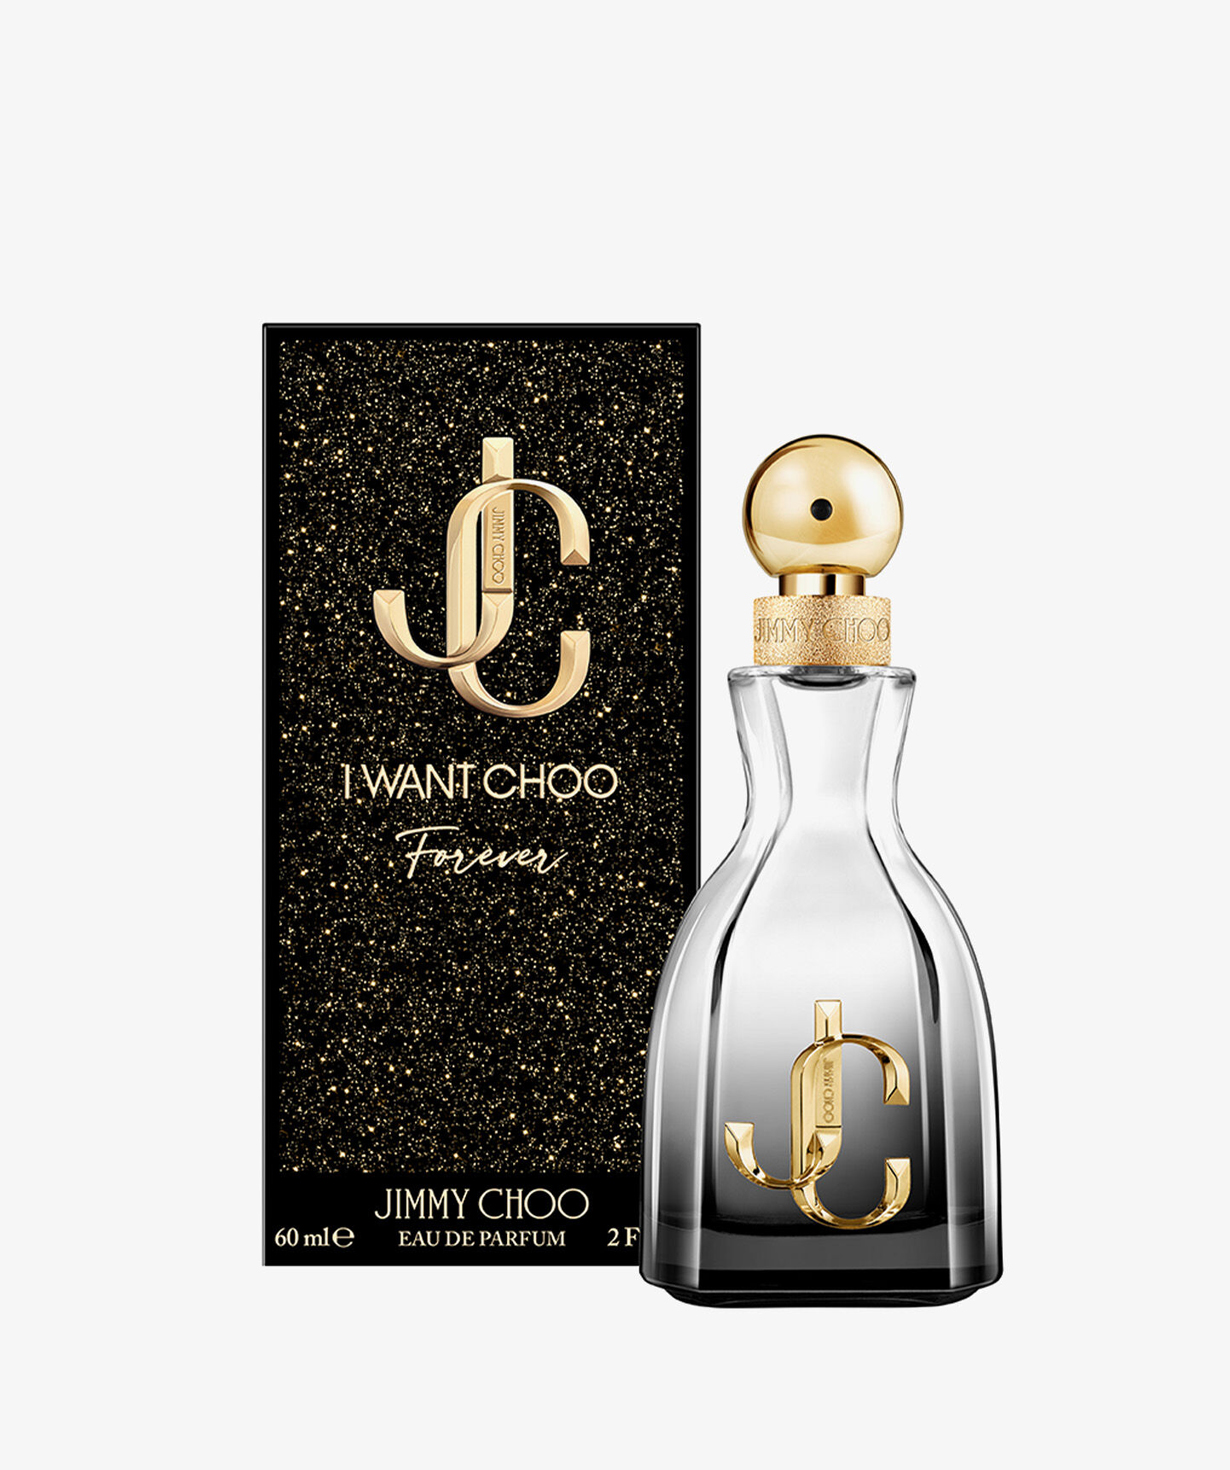 Perfume «Jimmy Choo» I Want Choo Forever, for women, 60 ml